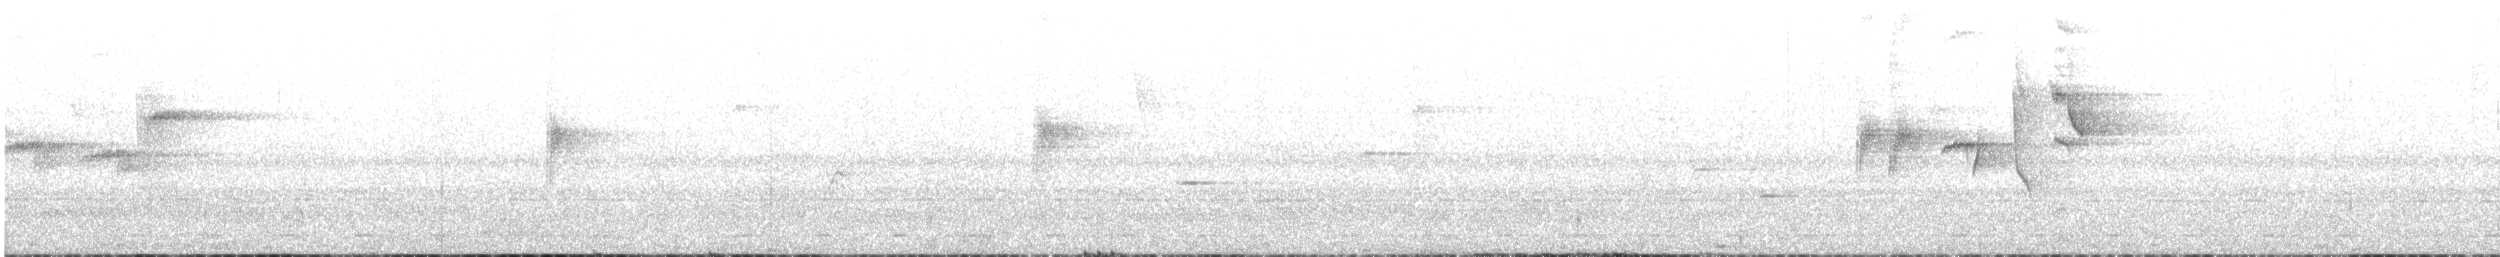 Ak Karınlı Tepeli Sinekkapan (albiventris) - ML37118751